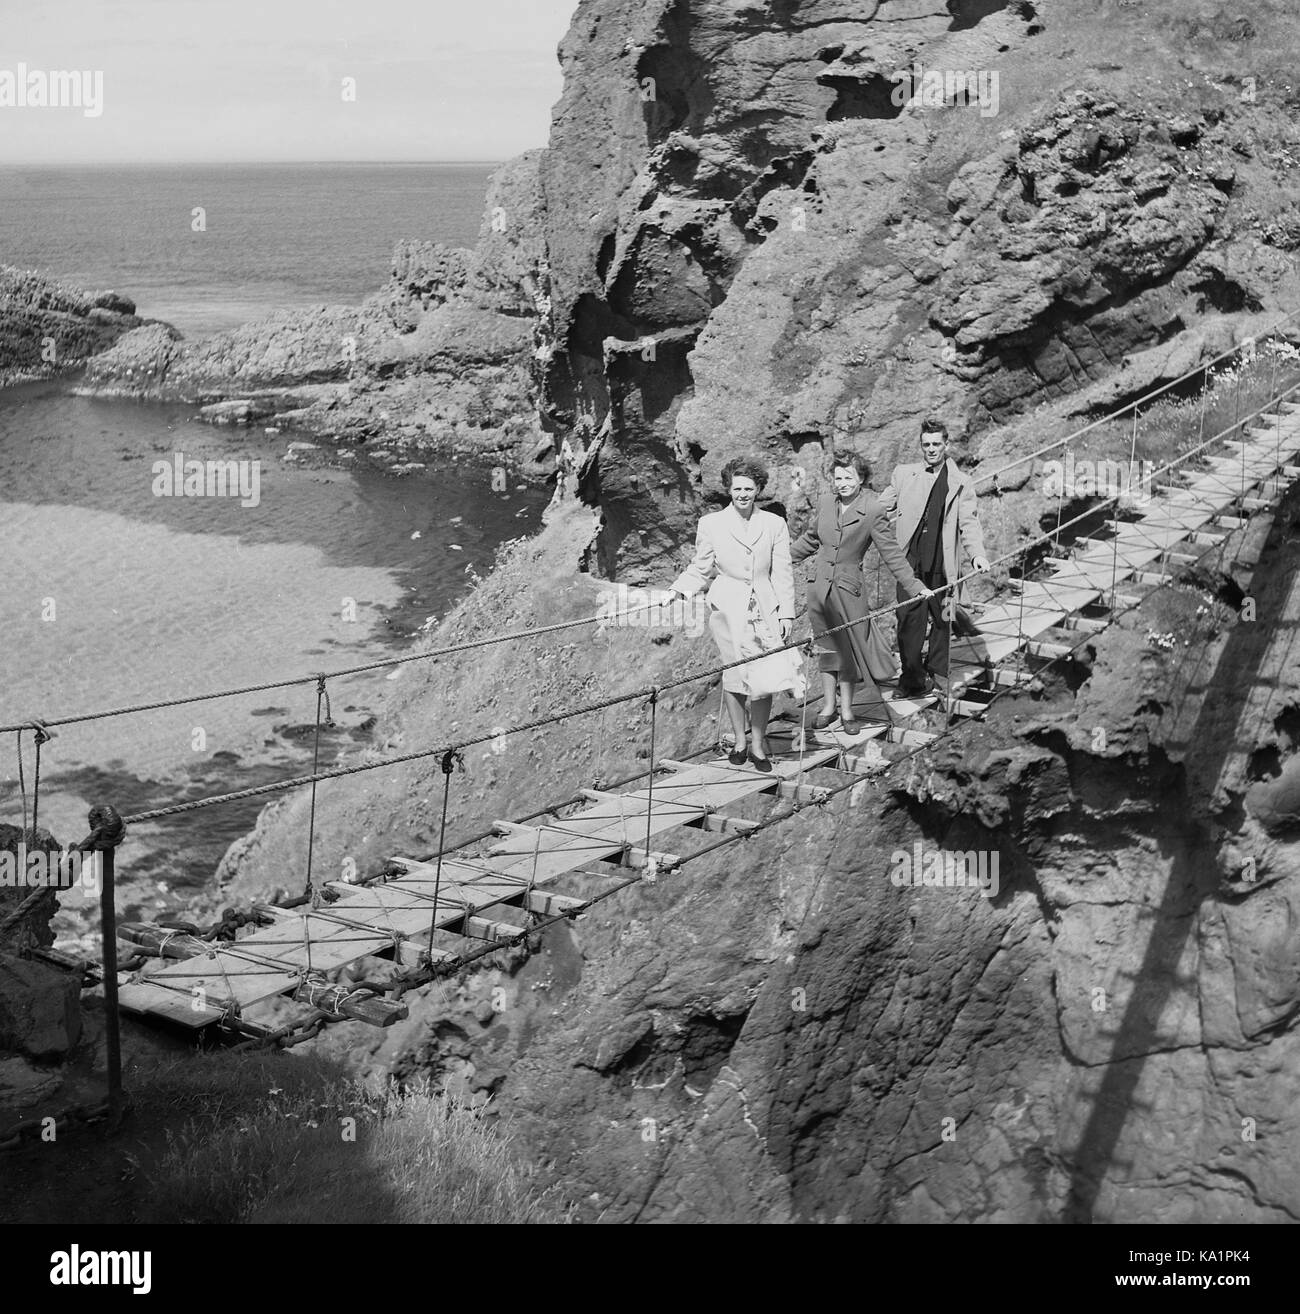 1950s, histórico, un hombre y dos damas de pie en el Puente de Cuerda Carrick-a-Rede, un famoso puente de cuerda o columpio cerca de Ballintoy en el Condado de Antrim, Irlanda del Norte, erigido por primera vez en 1755 por el pescador de salmón local. Foto de stock